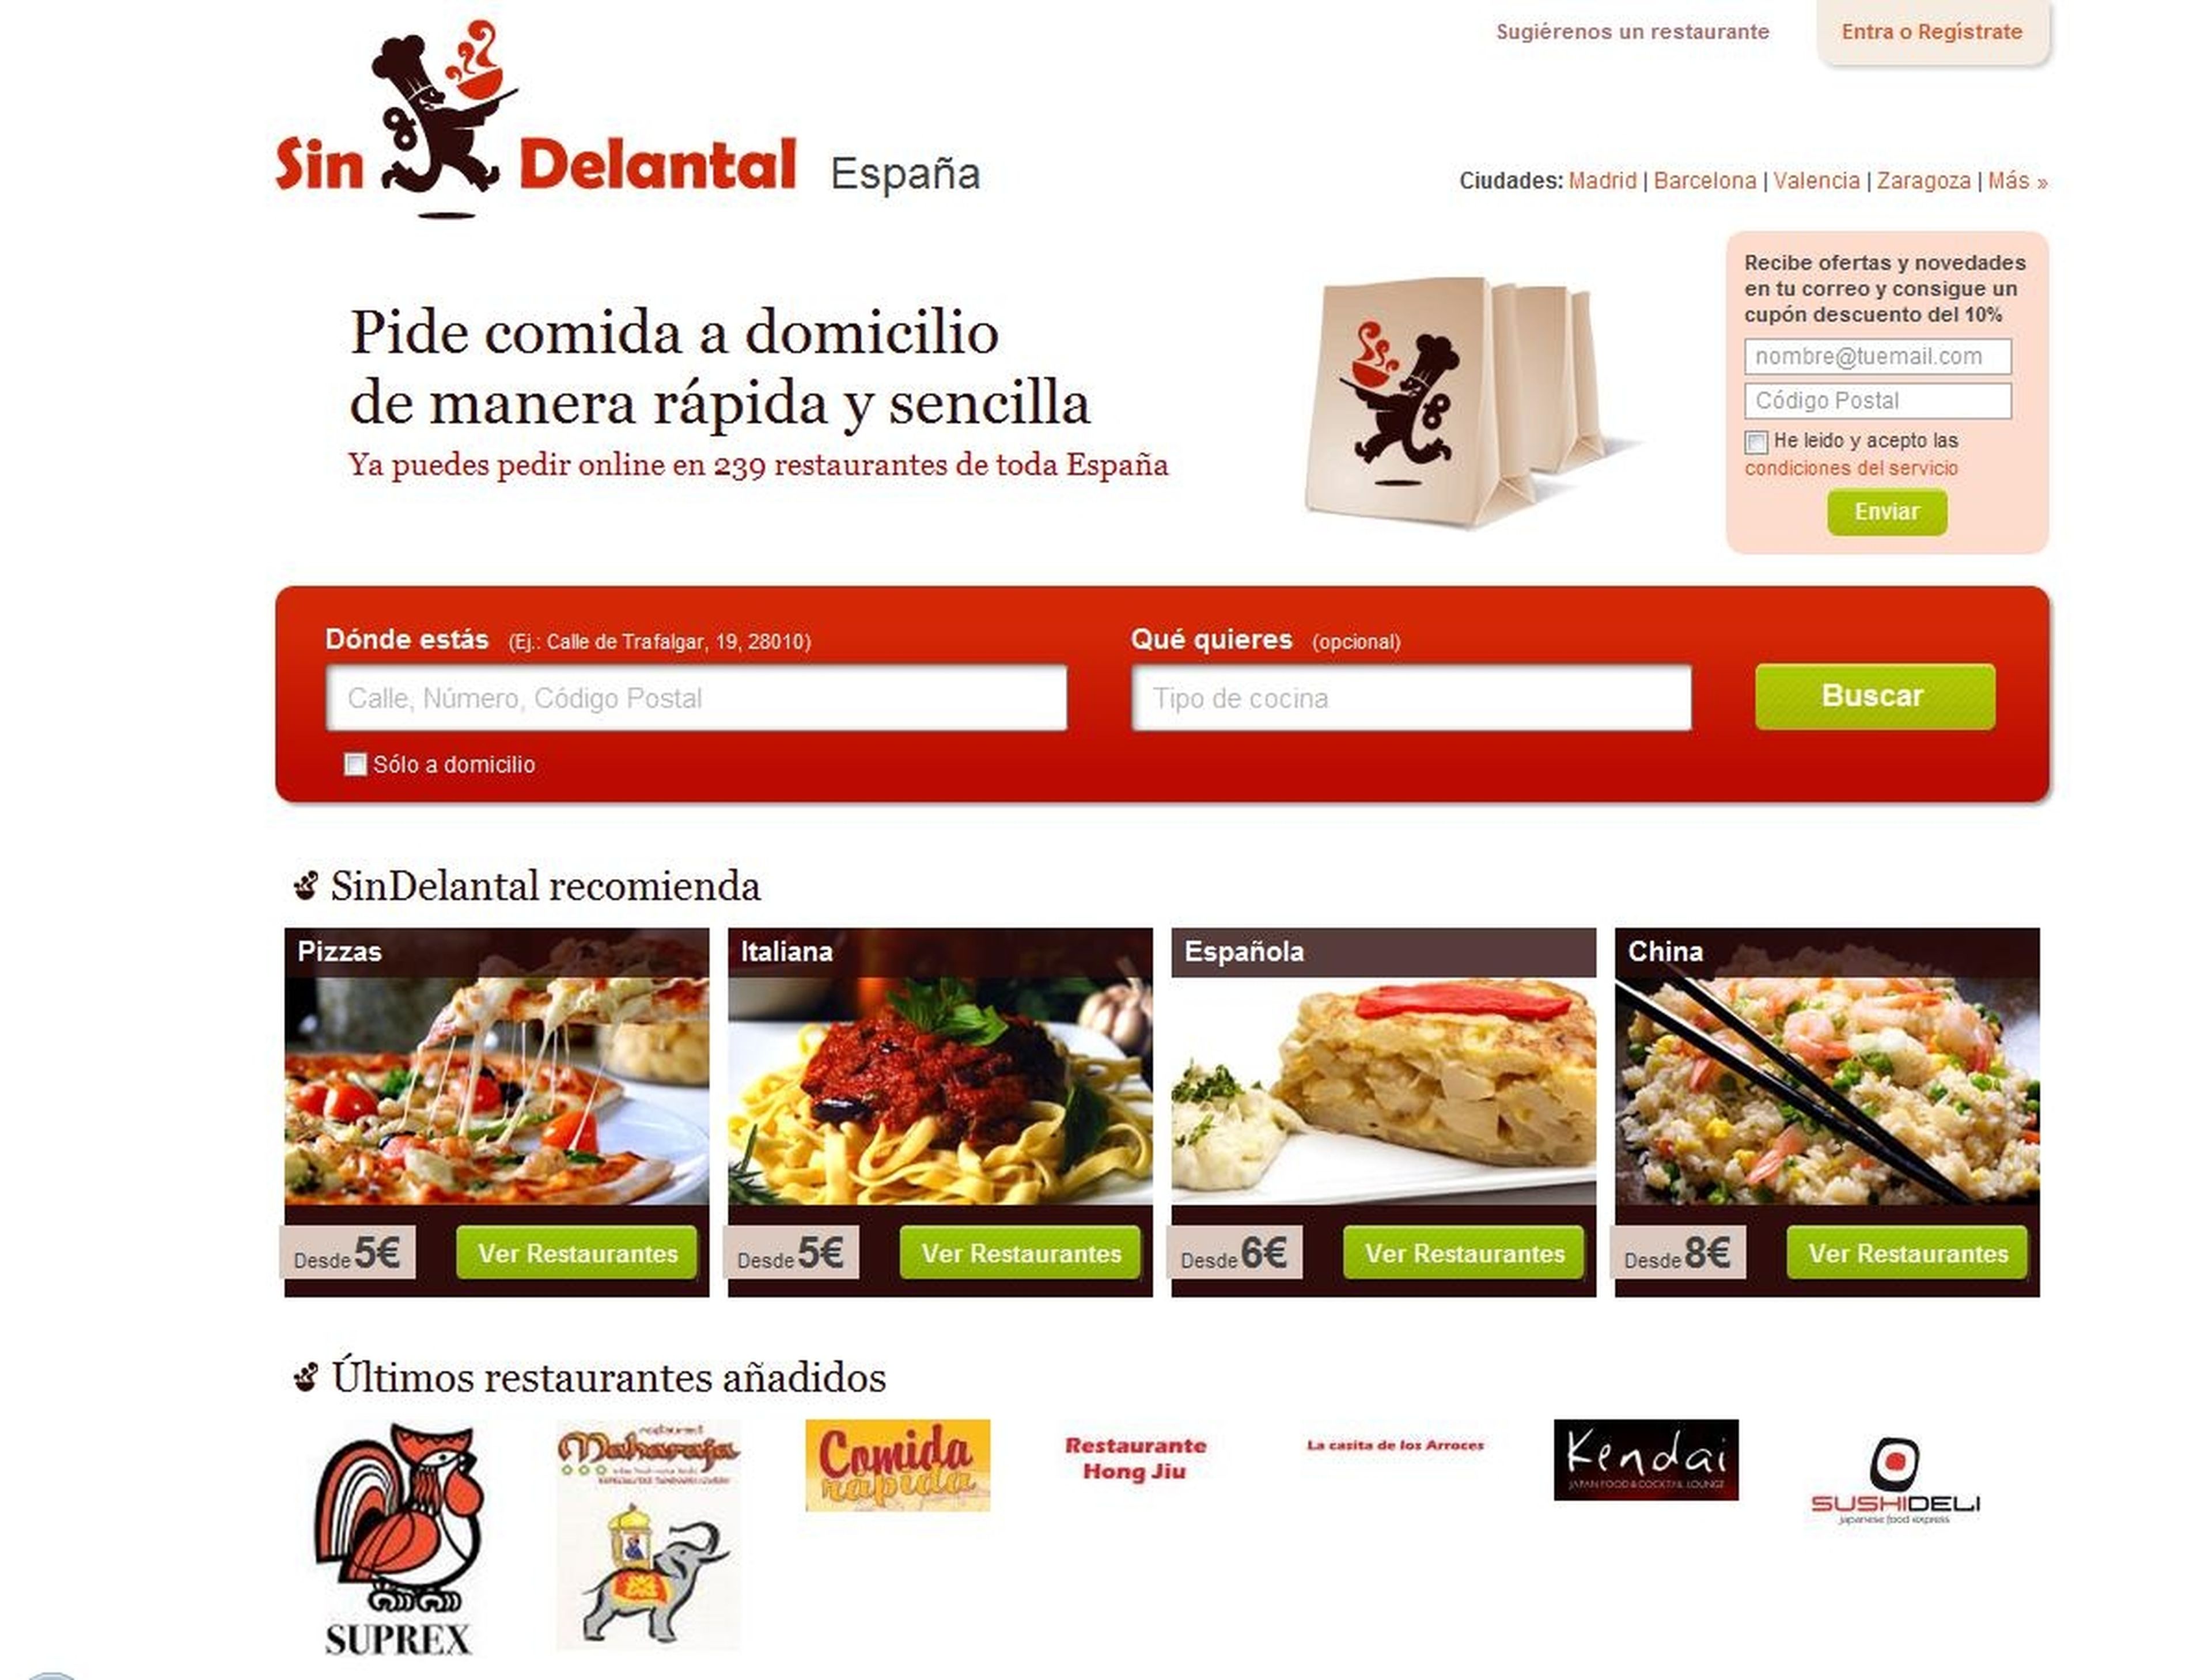 Así era la página web de SinDelantal España.